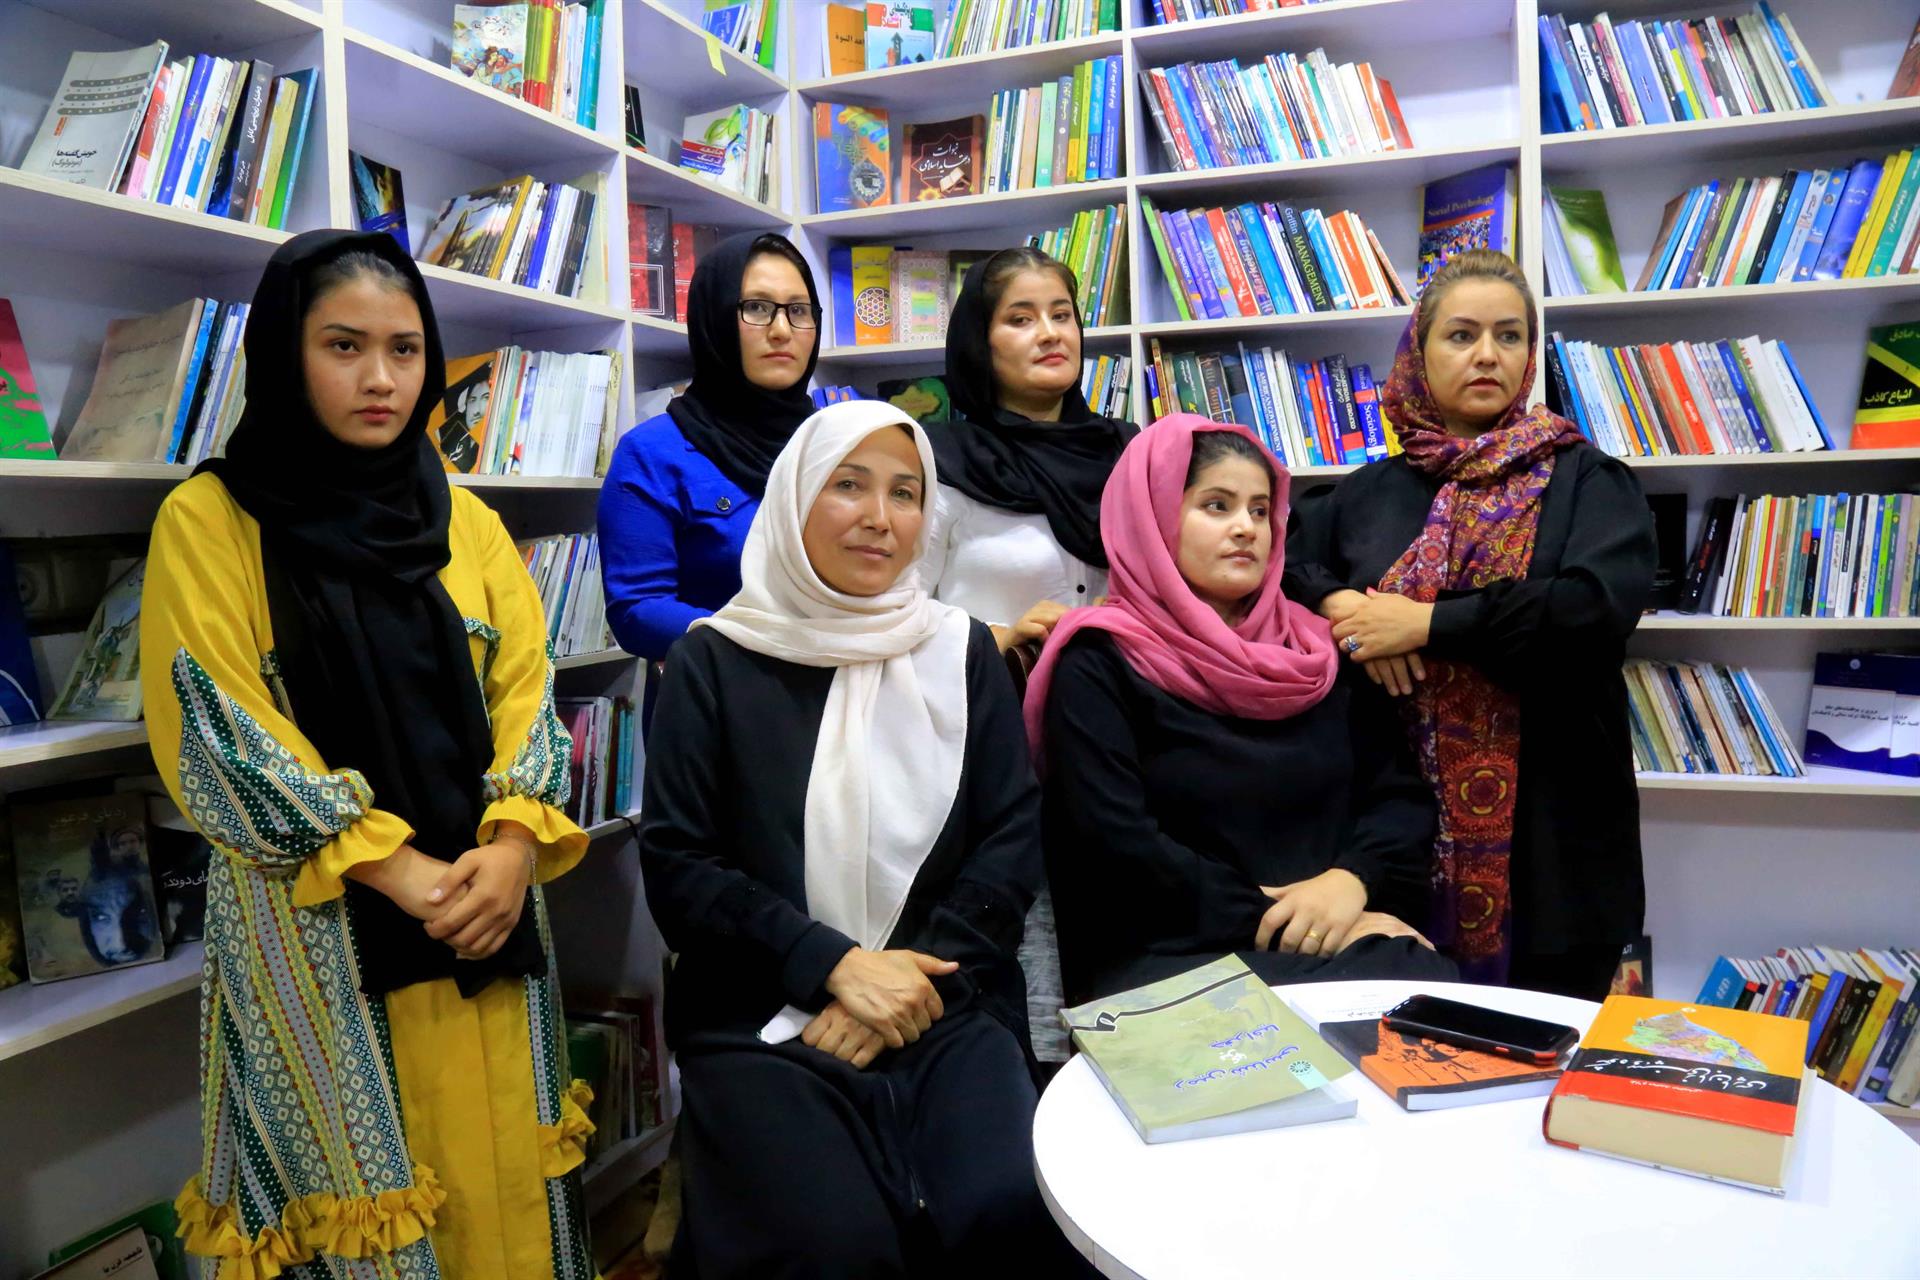 Kabul, chiude la biblioteca delle donne dopo minacce e pressioni dei talebani